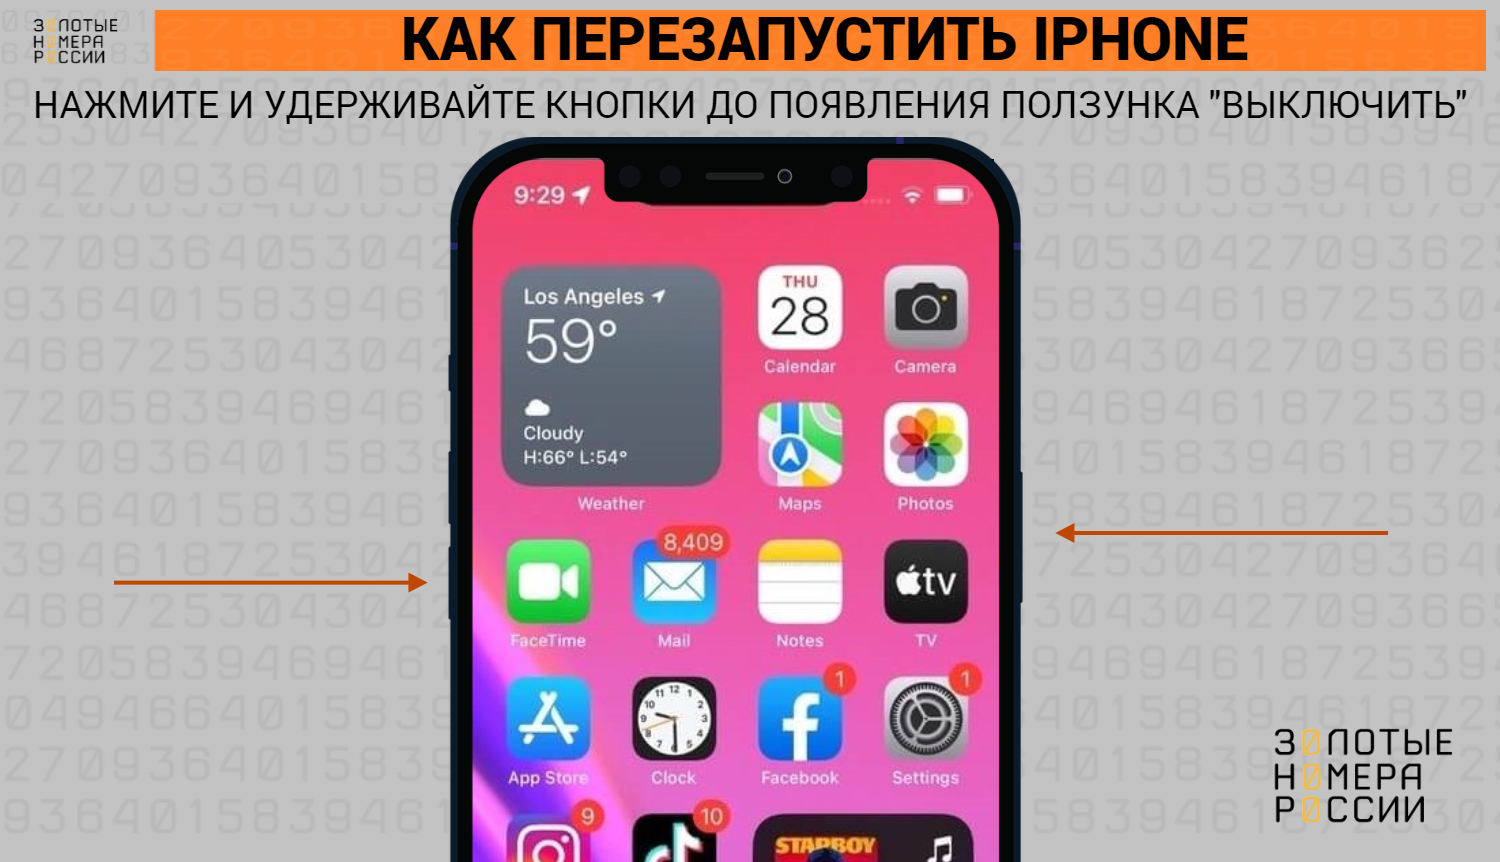 Как сделать хард ресет для iPhone - ТопНомер.ру